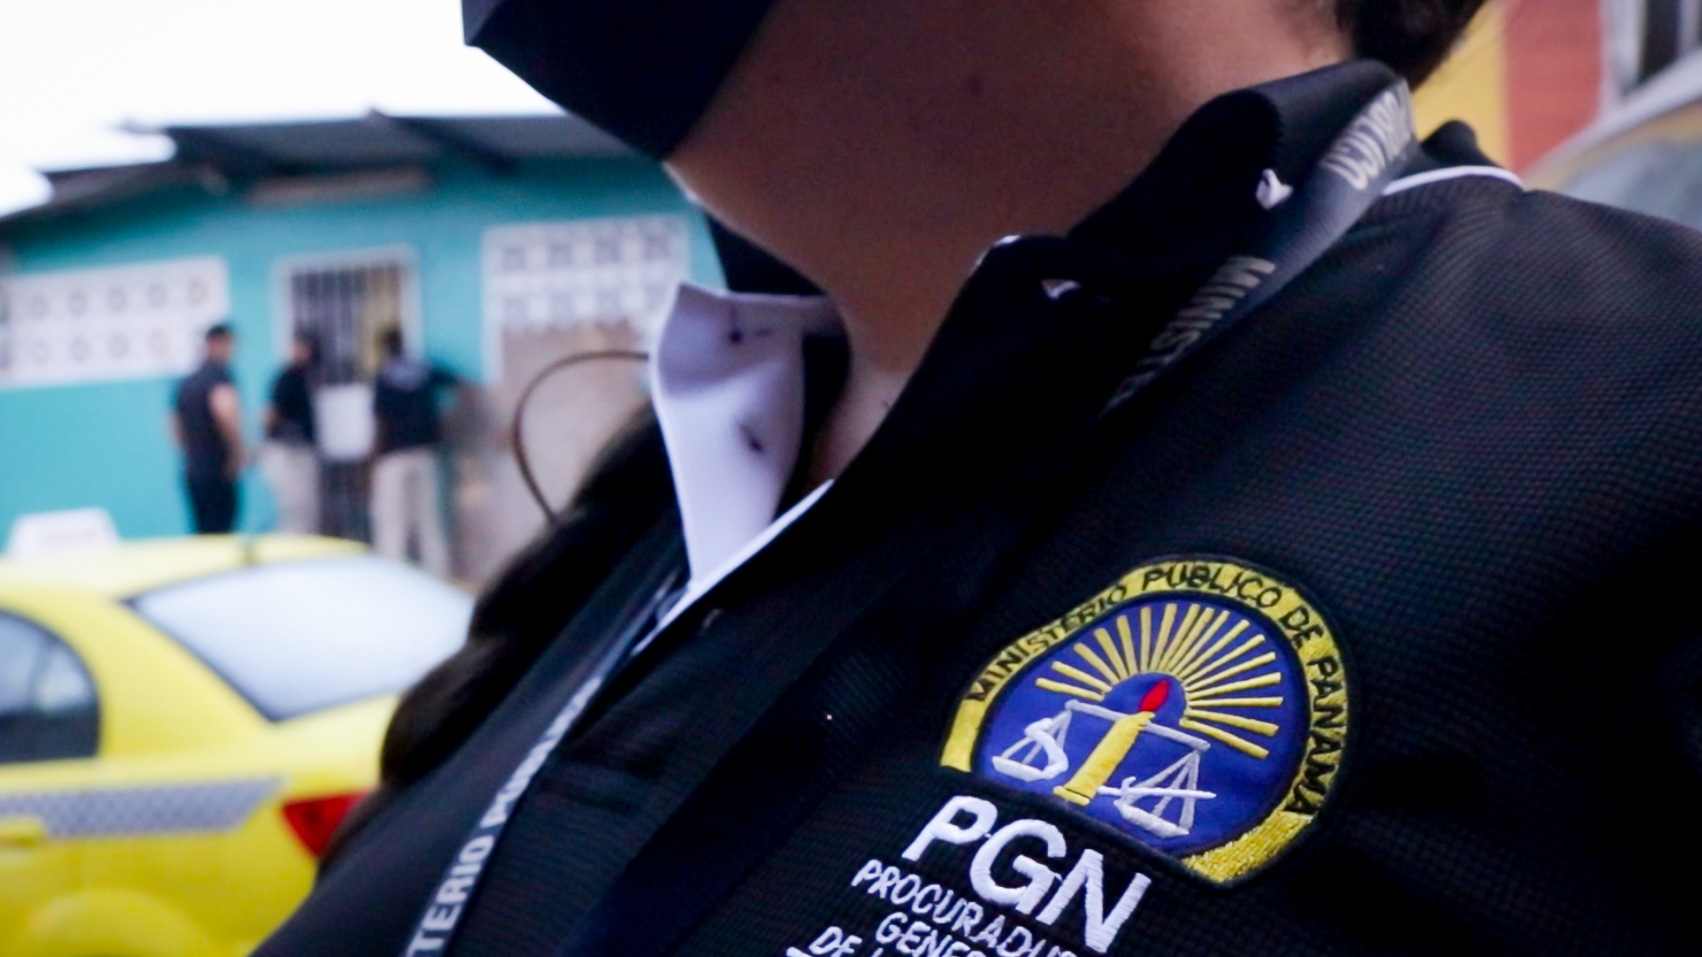 Ministerio Público y Policía Nacional capturan a varias personas indiciadas por delitos relacionados con drogas y estafas en Panamá, Panamá Oeste, Colón y San Miguelito